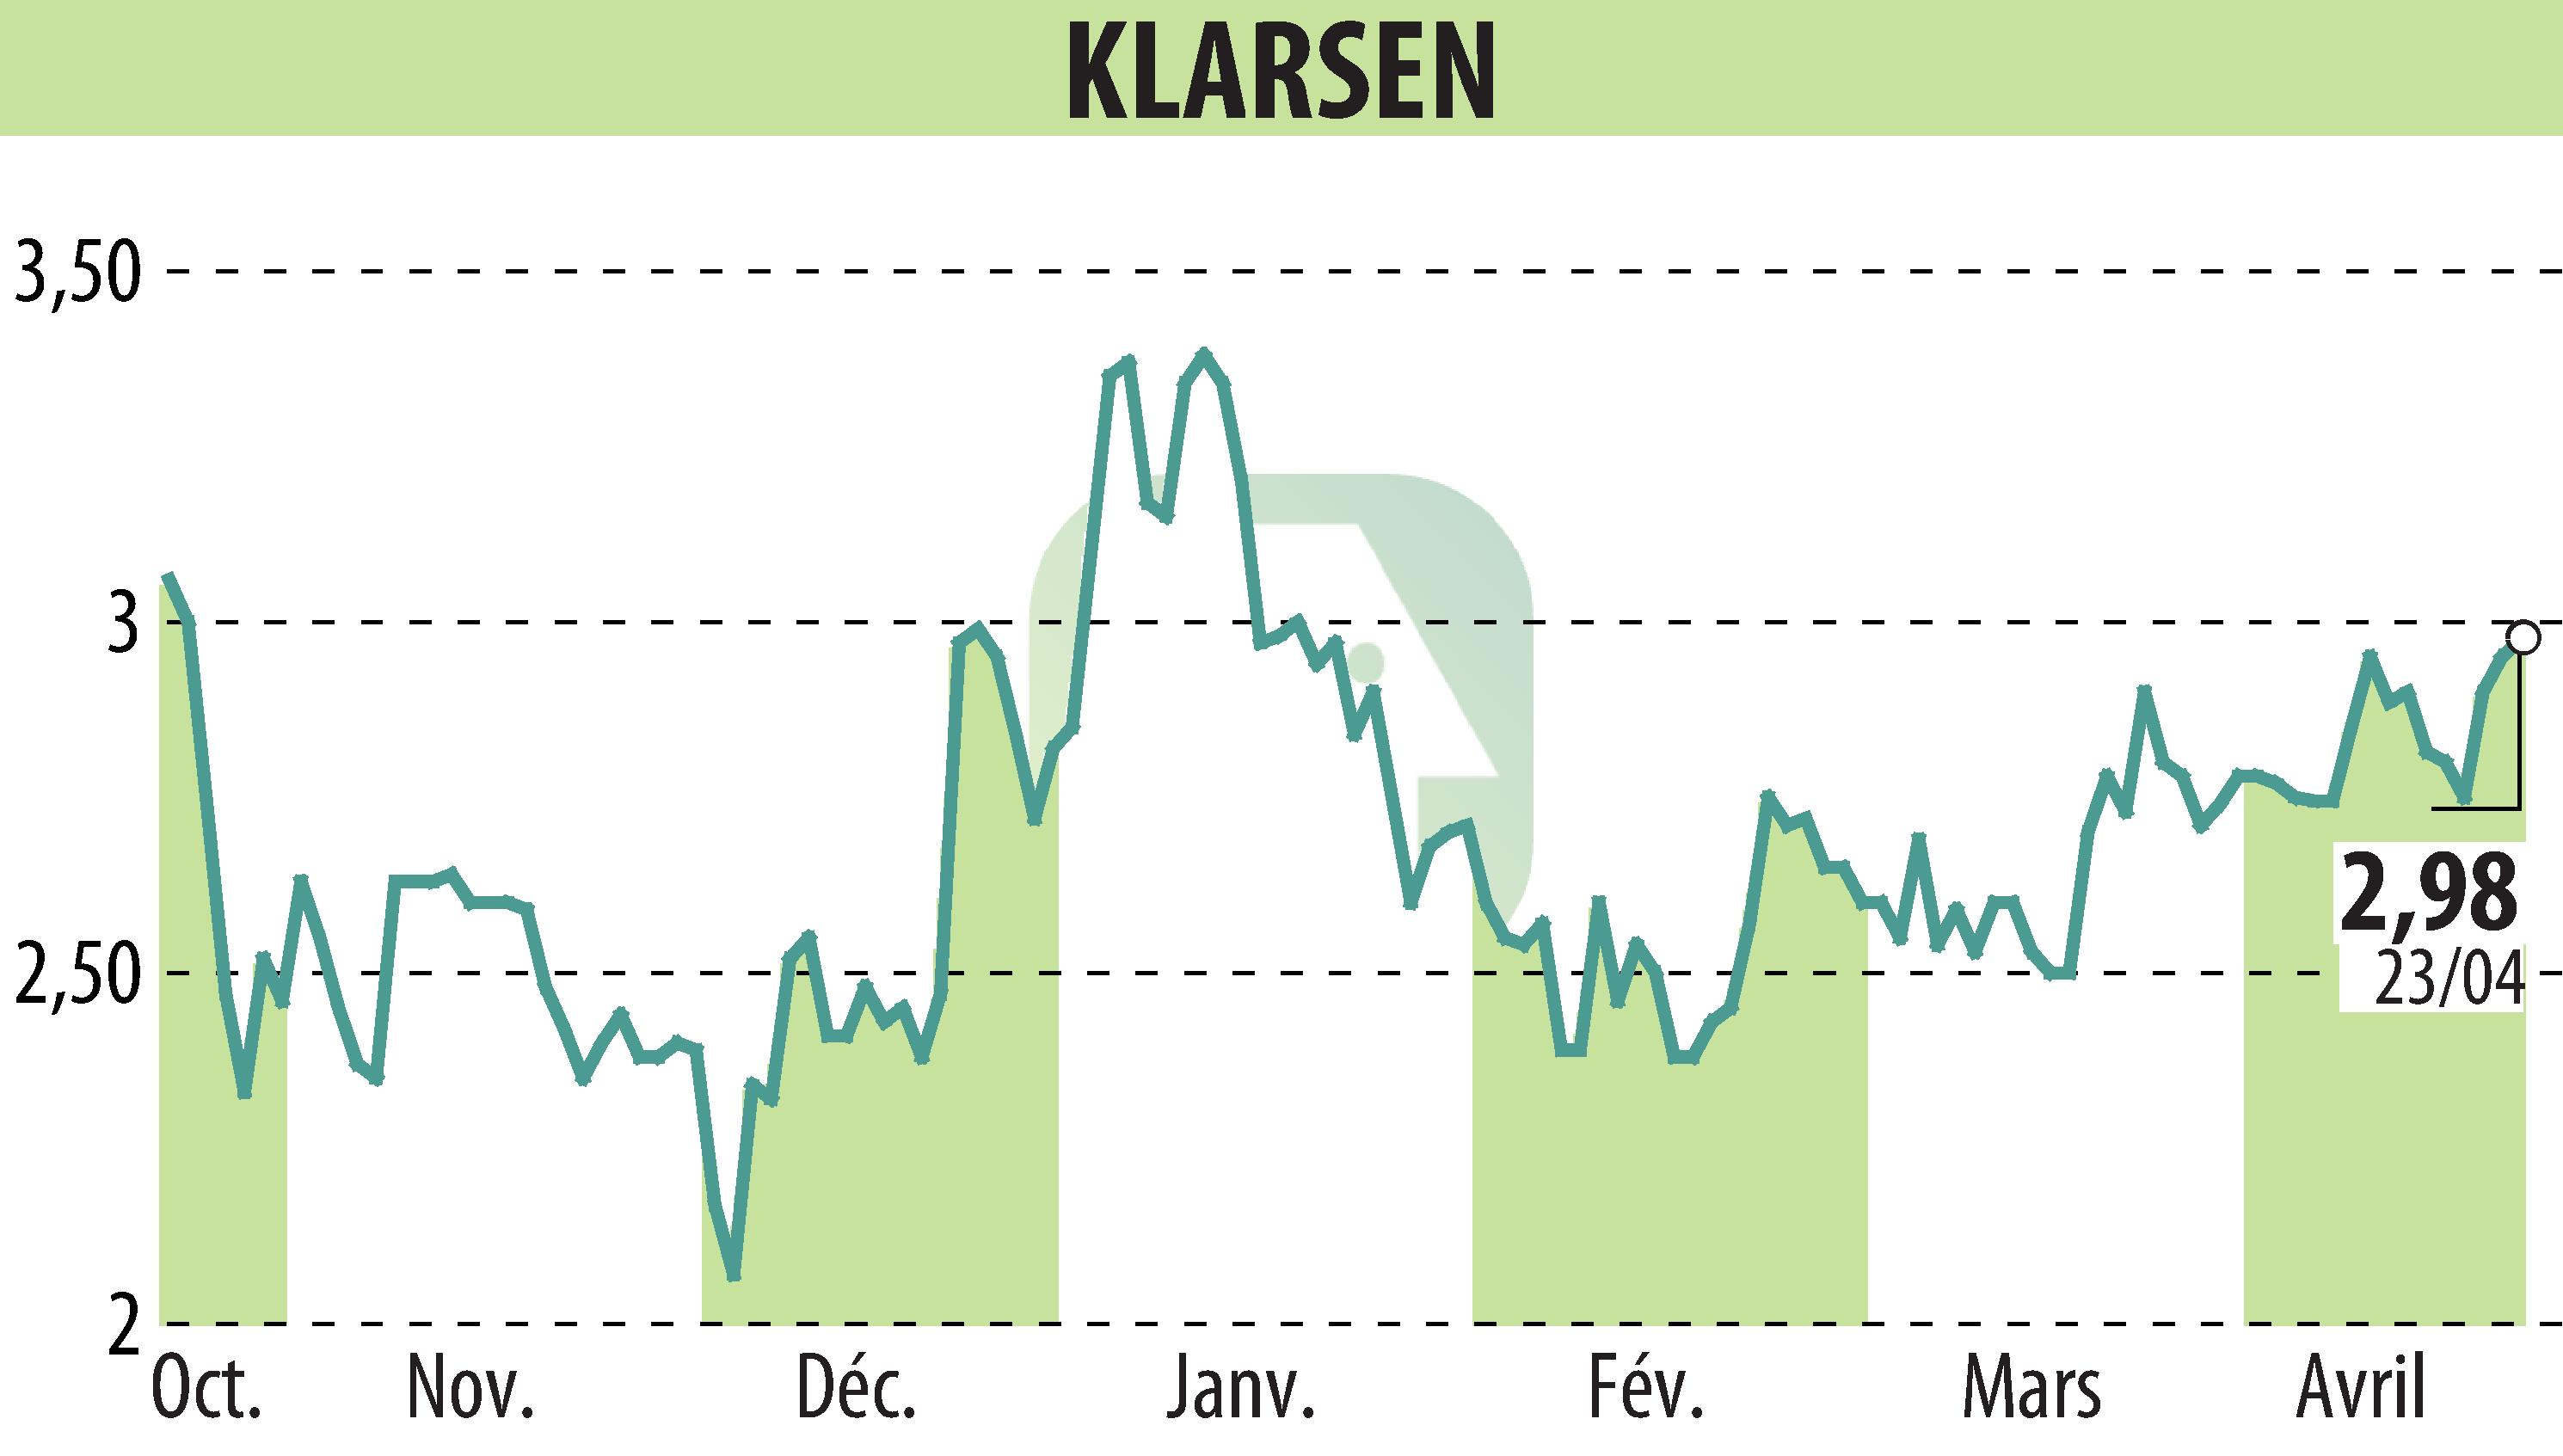 Stock price chart of KLARSEN (EPA:ALKLA) showing fluctuations.